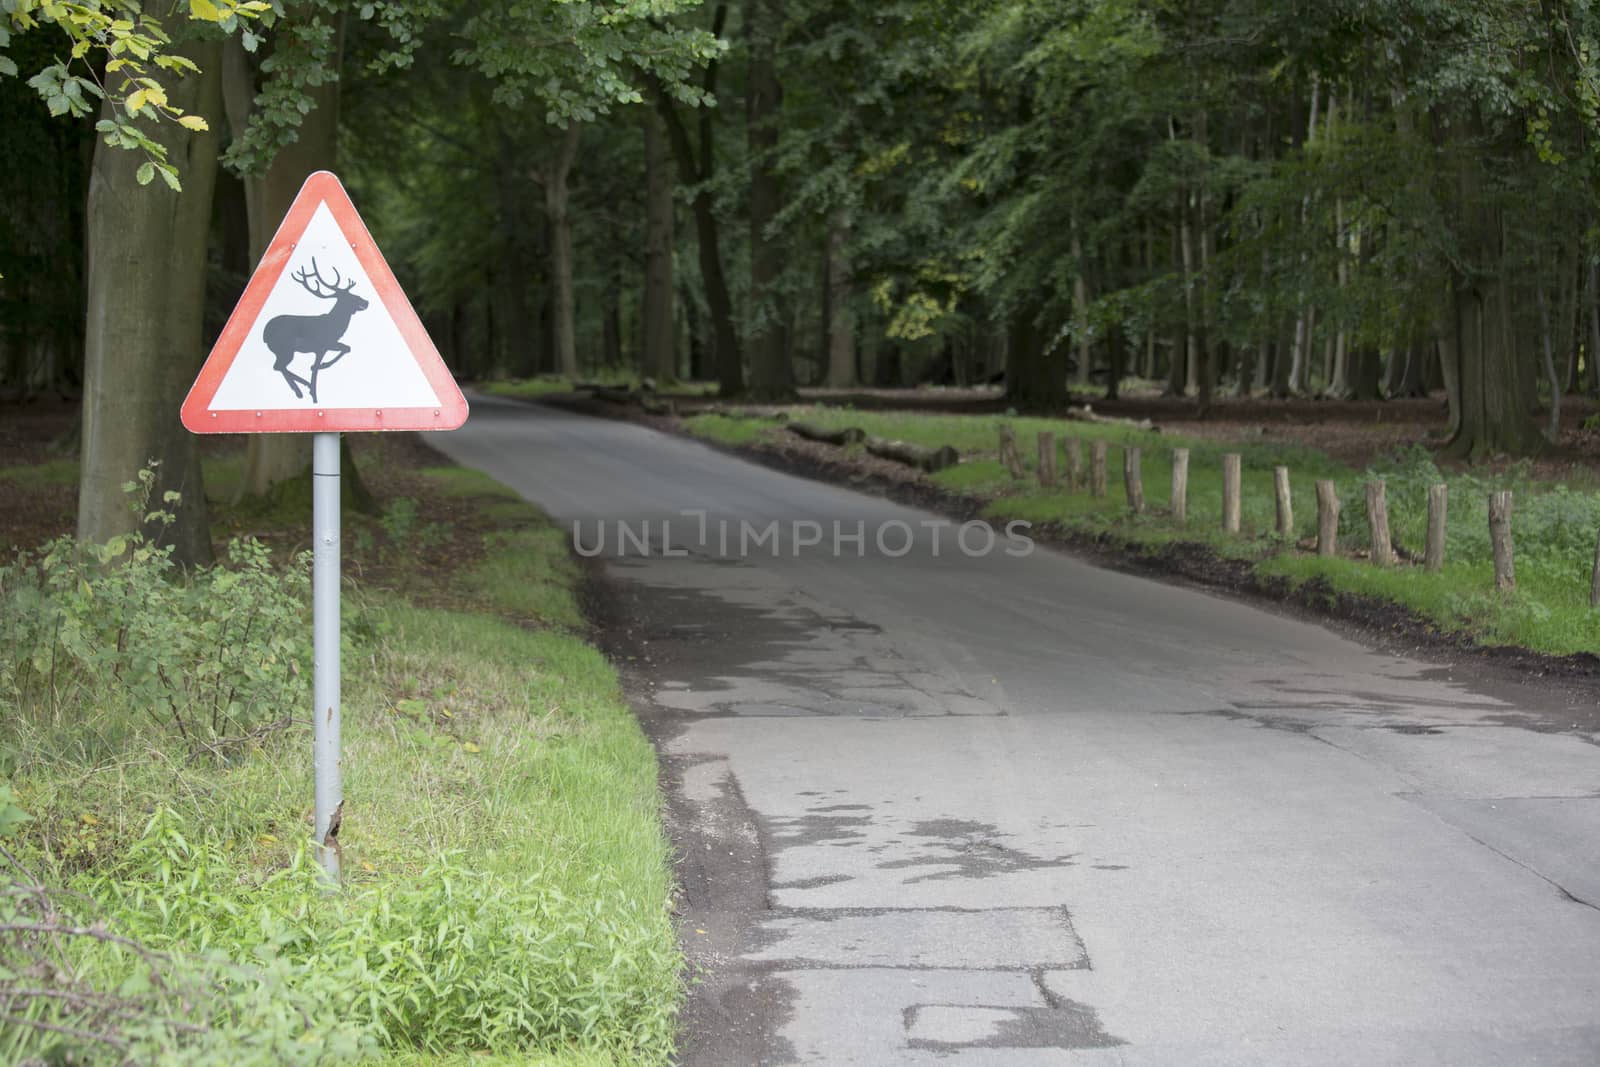 Deer in road - landscape by mattkusb